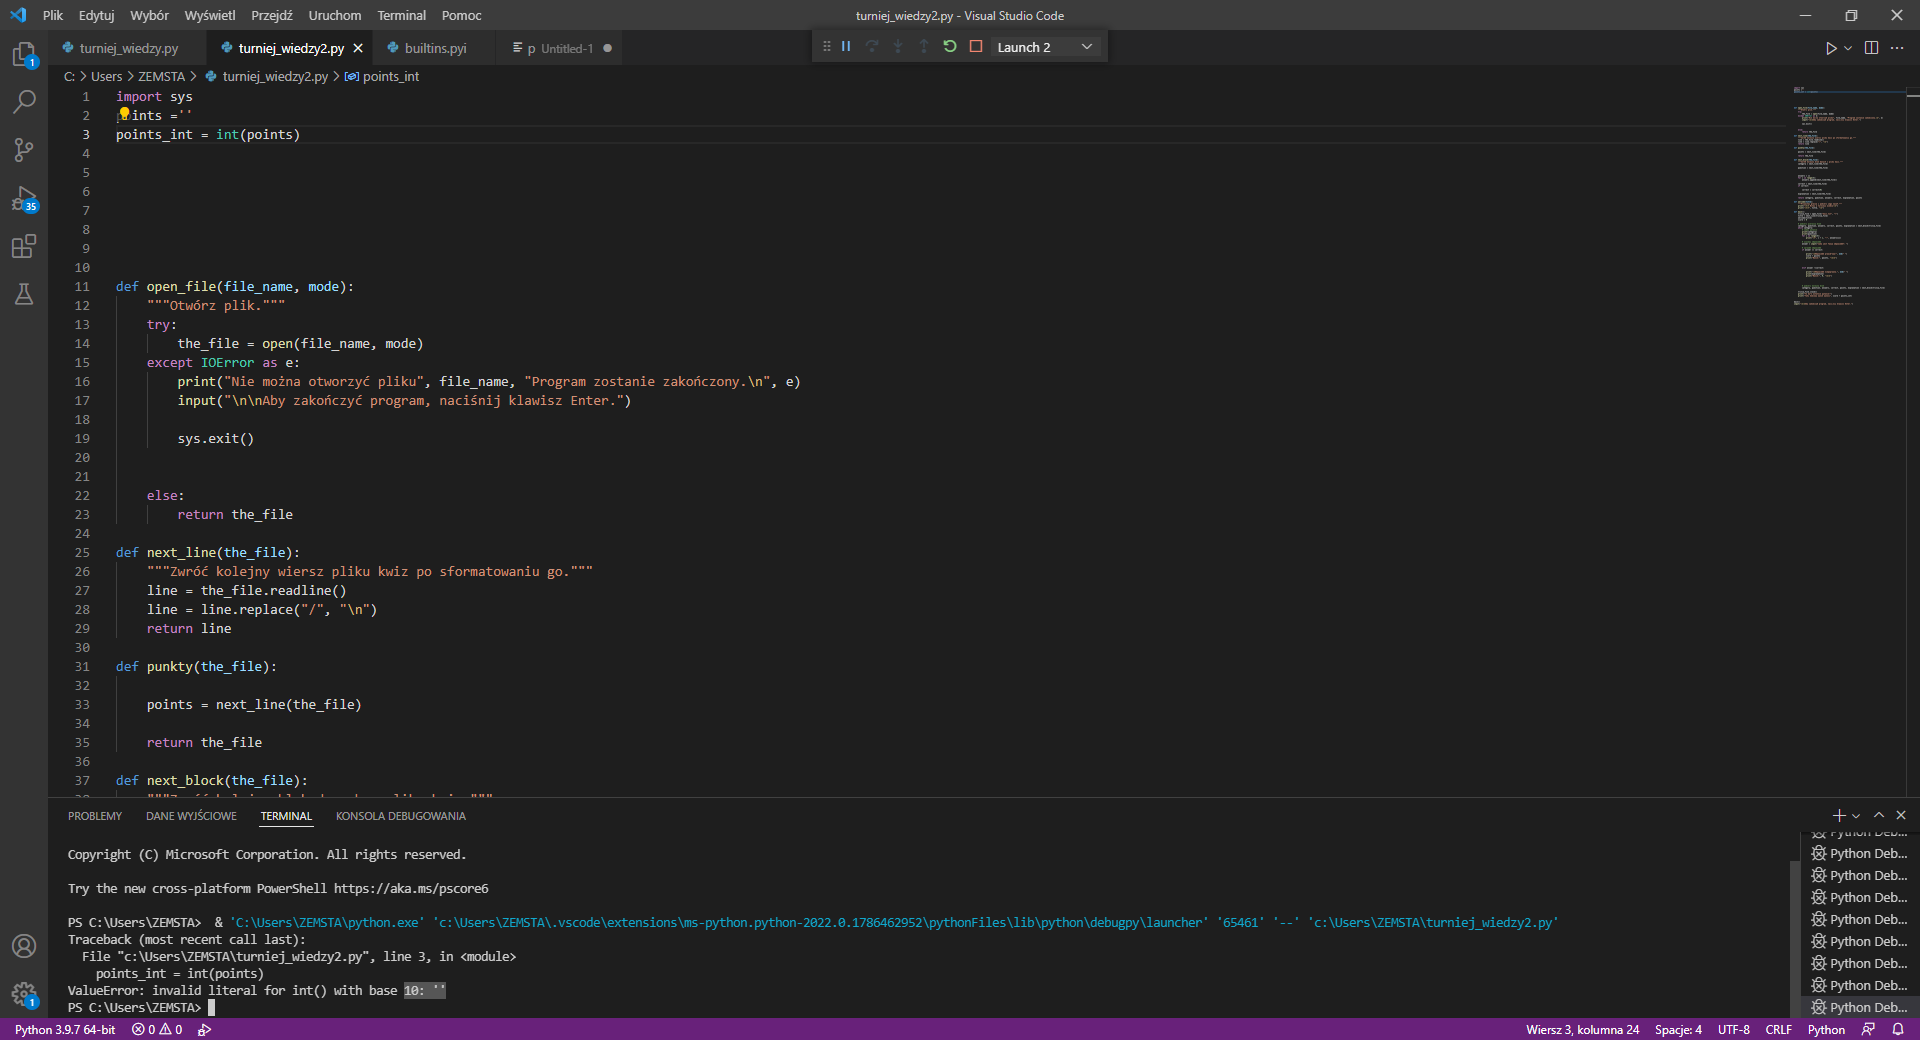 turniej_wiedzy2.py - Visual Studio Code 09.02.2022 20_56_29.png